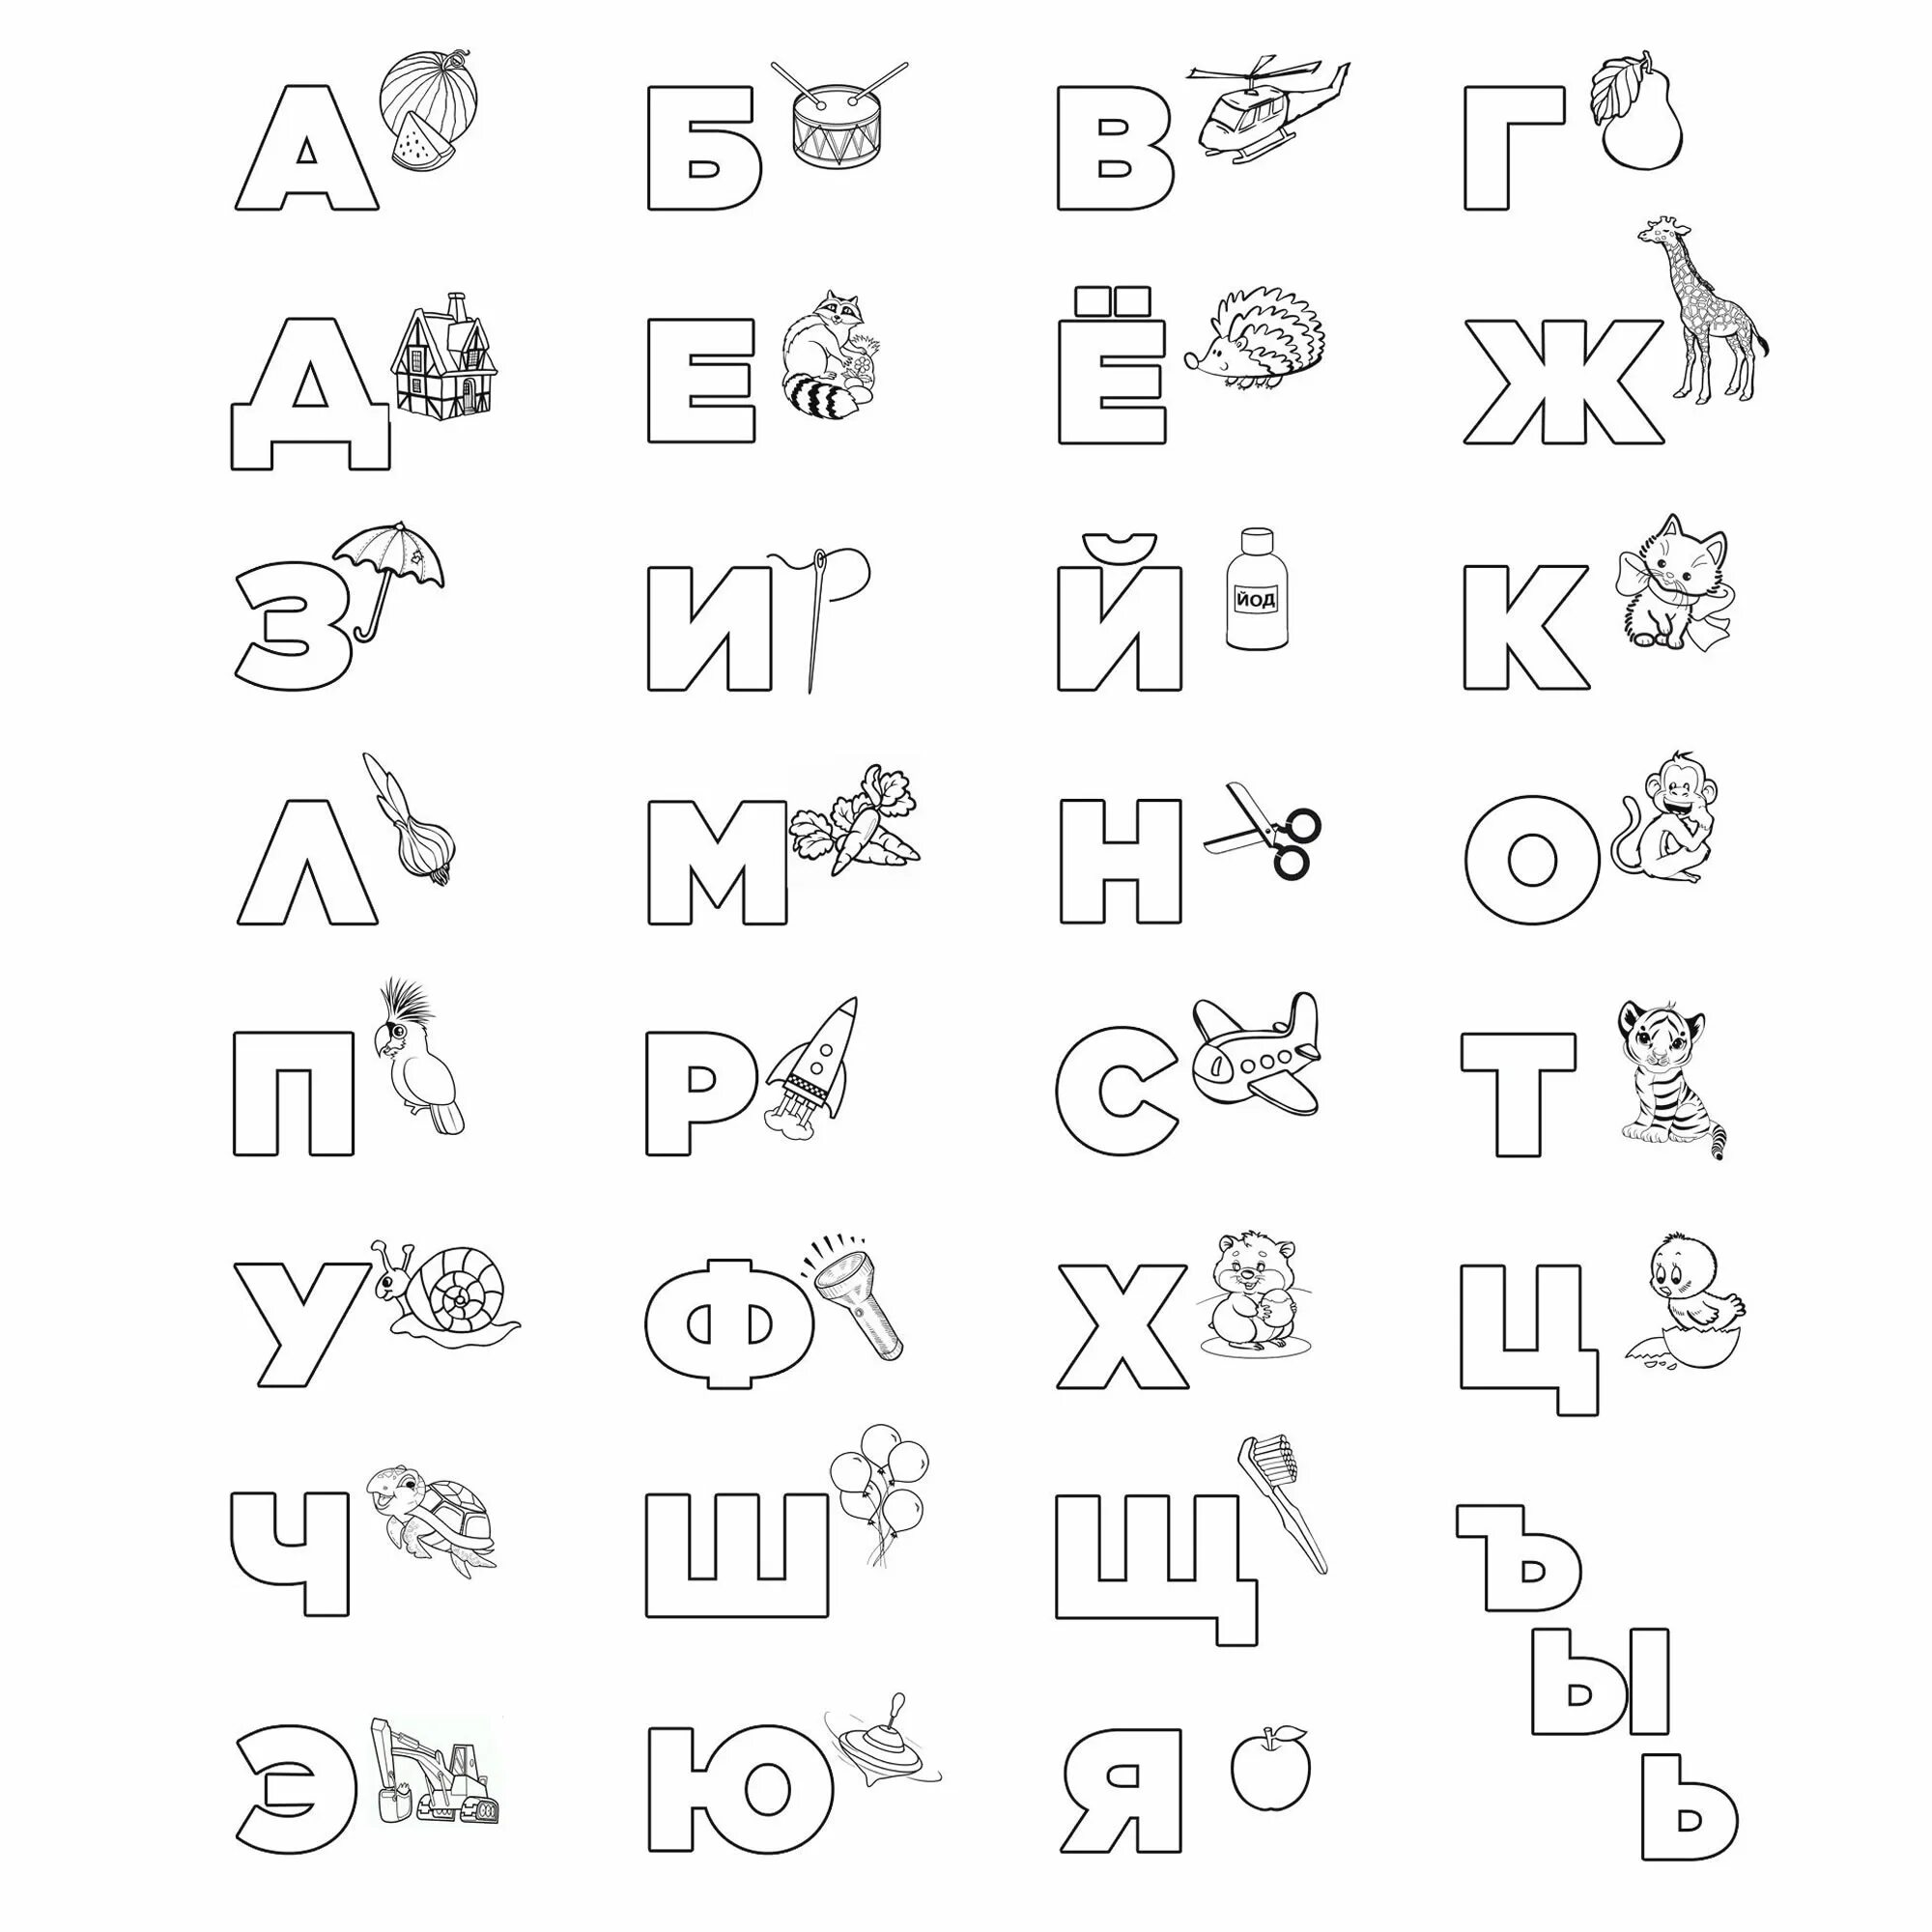 Алфавит русский печатный все 33 буквы #10